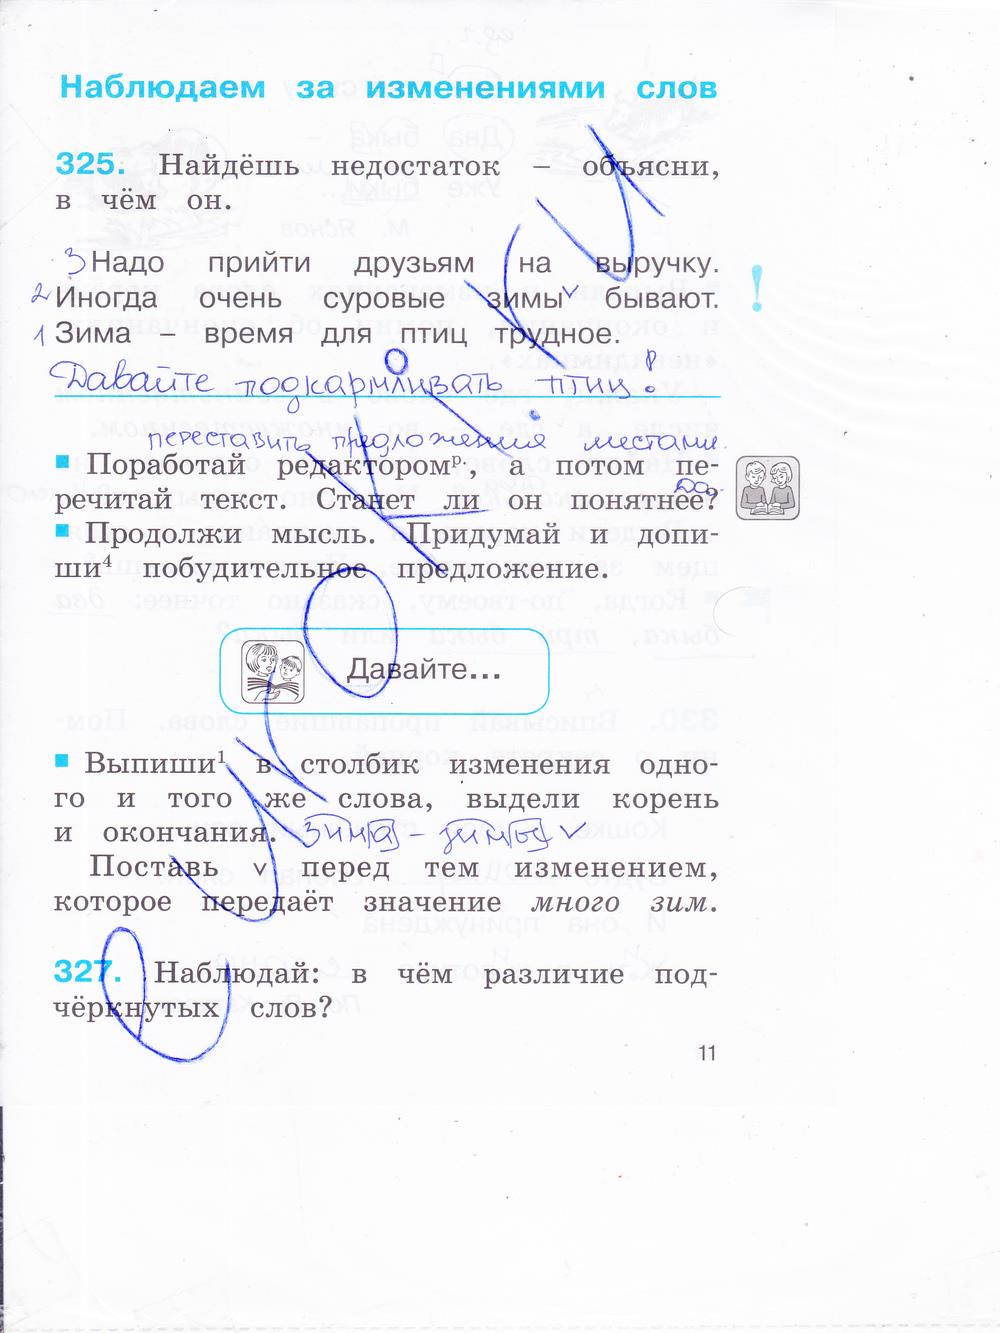 гдз 2 класс рабочая тетрадь часть 2 страница 11 русский язык Соловейчик, Кузьменко